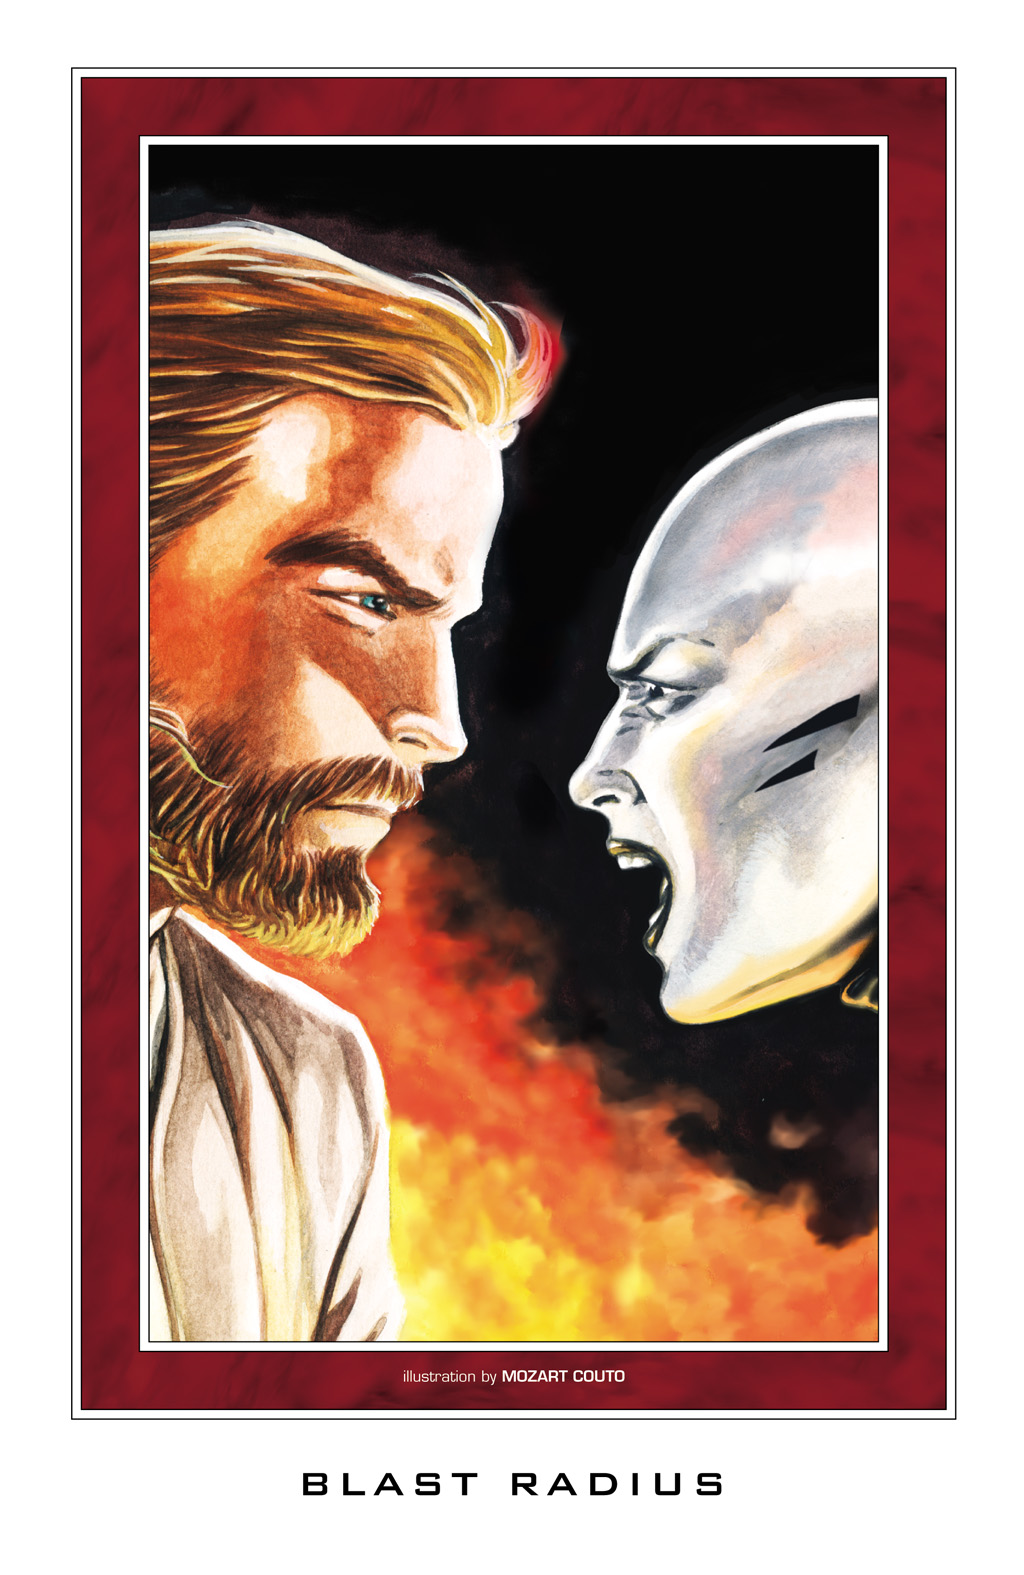 Read online Star Wars: Clone Wars comic -  Issue # TPB 2 - 50